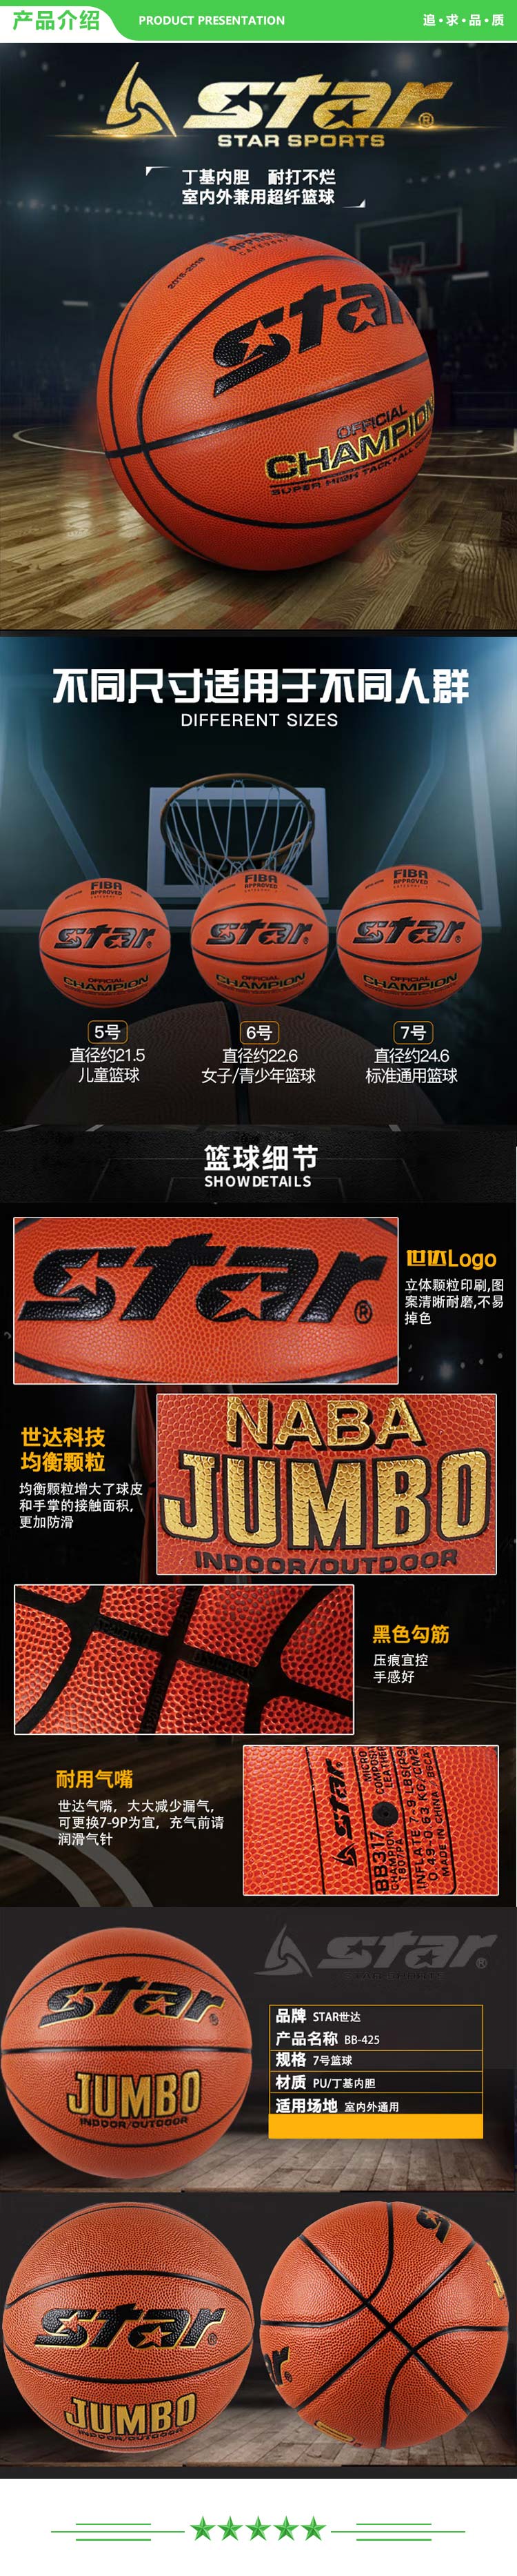 世达 star BB417 篮球7号 篮球掌控比赛室内外两用PU材质7号标准 .jpg